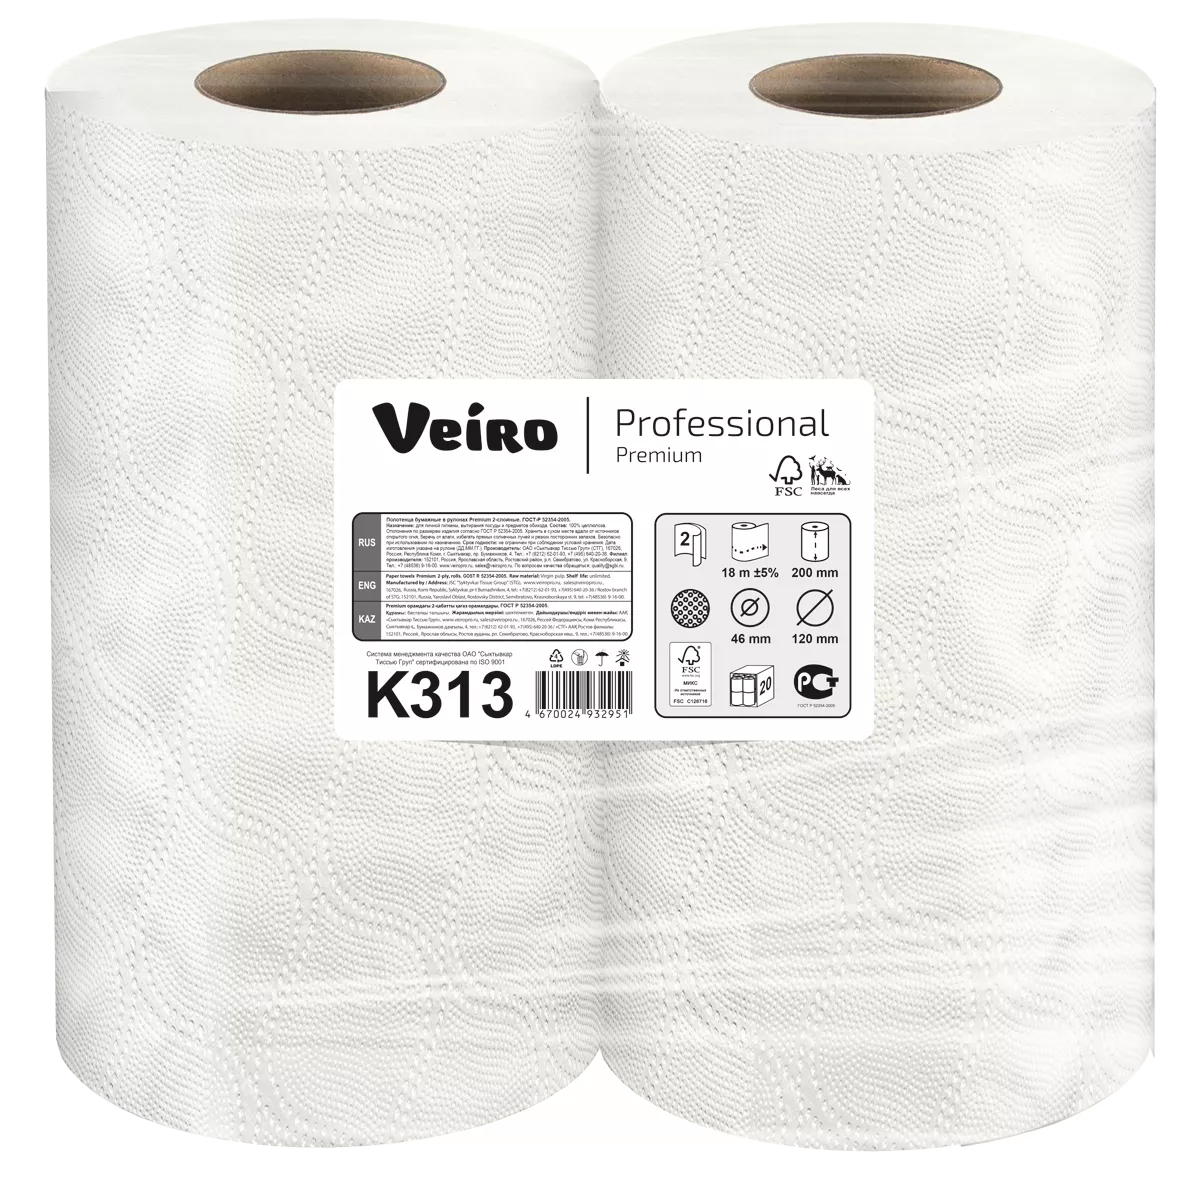 Бумажное полотенце в упаковке 2 рулона. Veiro professional Premium k313. Туалетная бумага Veiro professional Premium t309,. Полотенца бумажные Veiro professional. Veiro professional t11200.